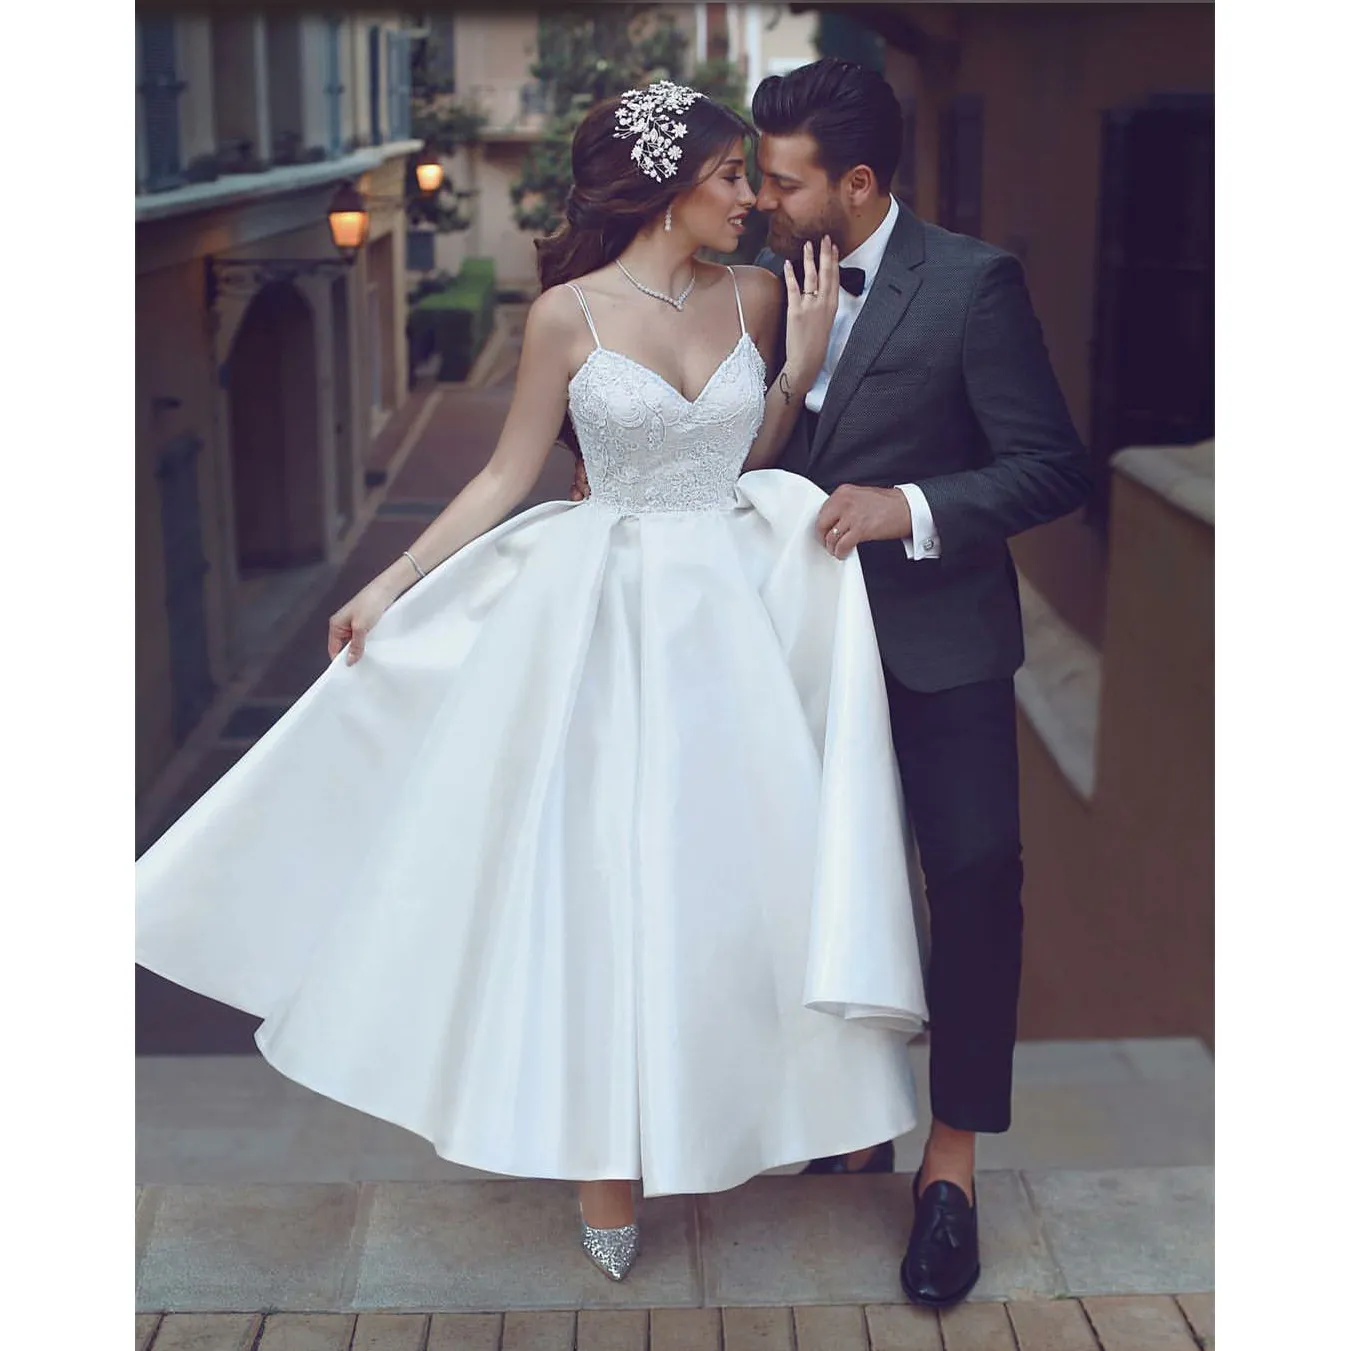 Kort fotled Längd Brudklänning Härlig Vit Lace Applique Spaghetti Straps Satin Bröllopsklänning sa Mhamad A-Line Backless Wedding Dresses